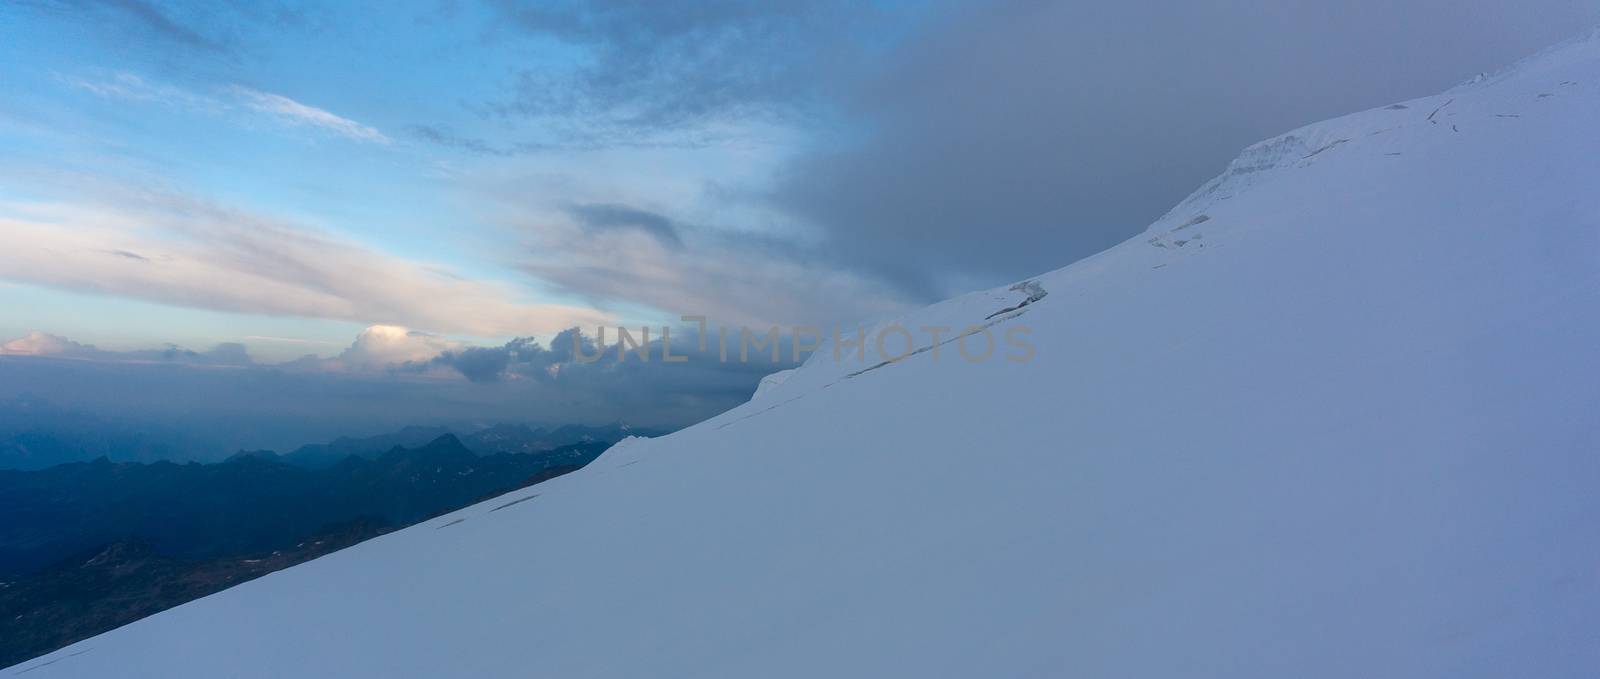 Alpine trek in high Alps mountain tourism by javax